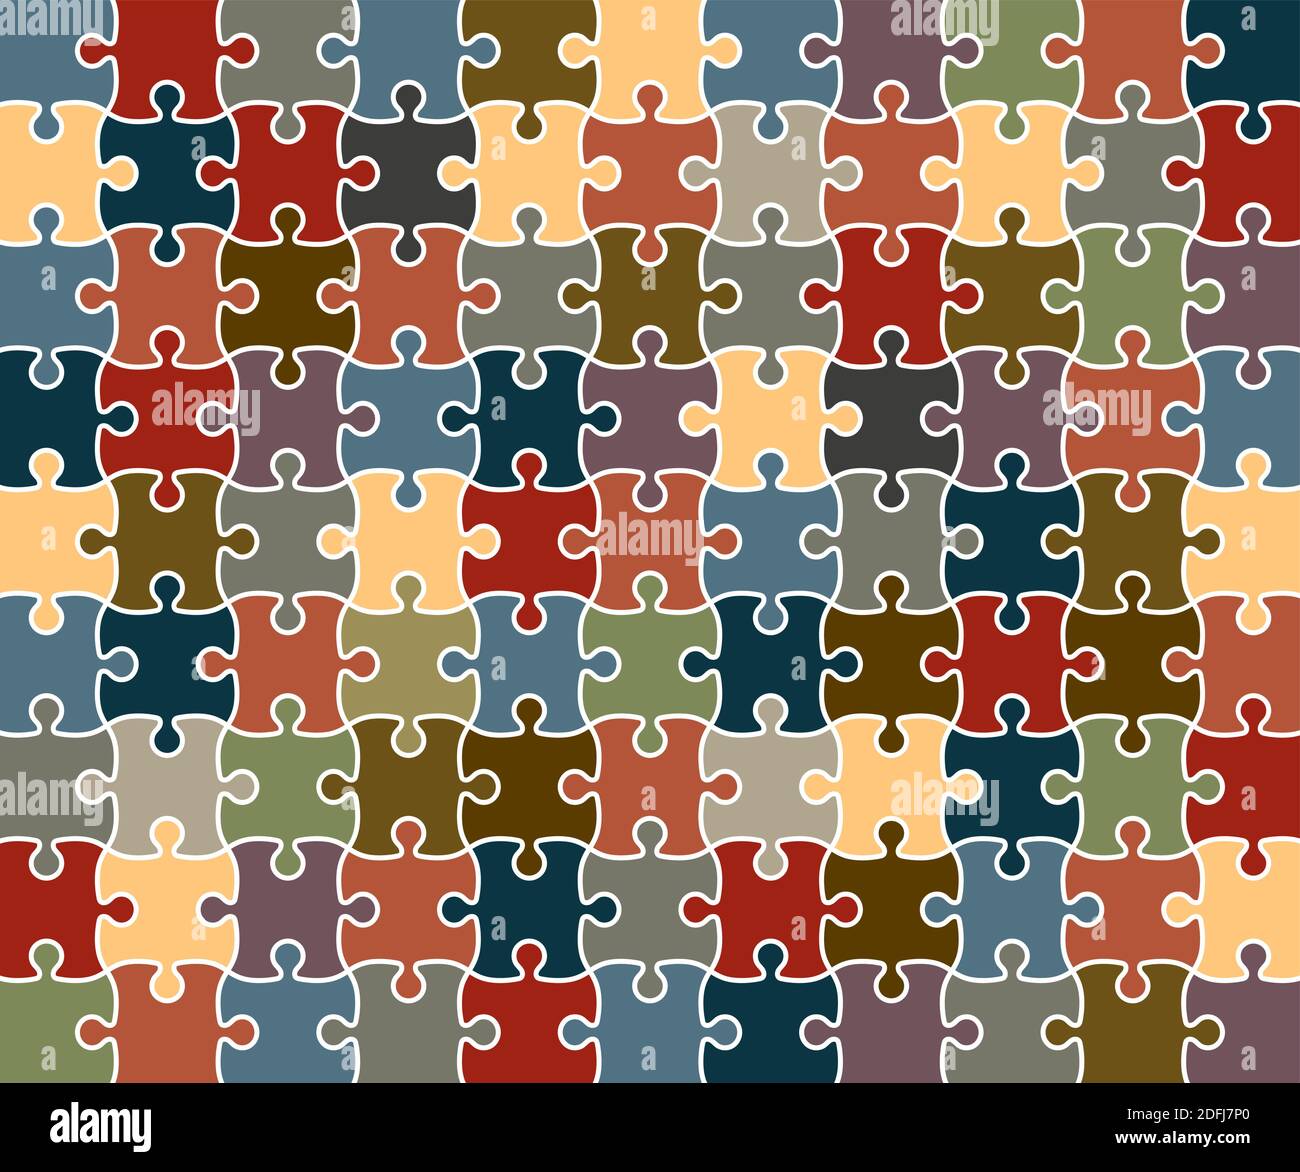 Rompecabezas de 500 piezas Imágenes vectoriales de stock - Alamy